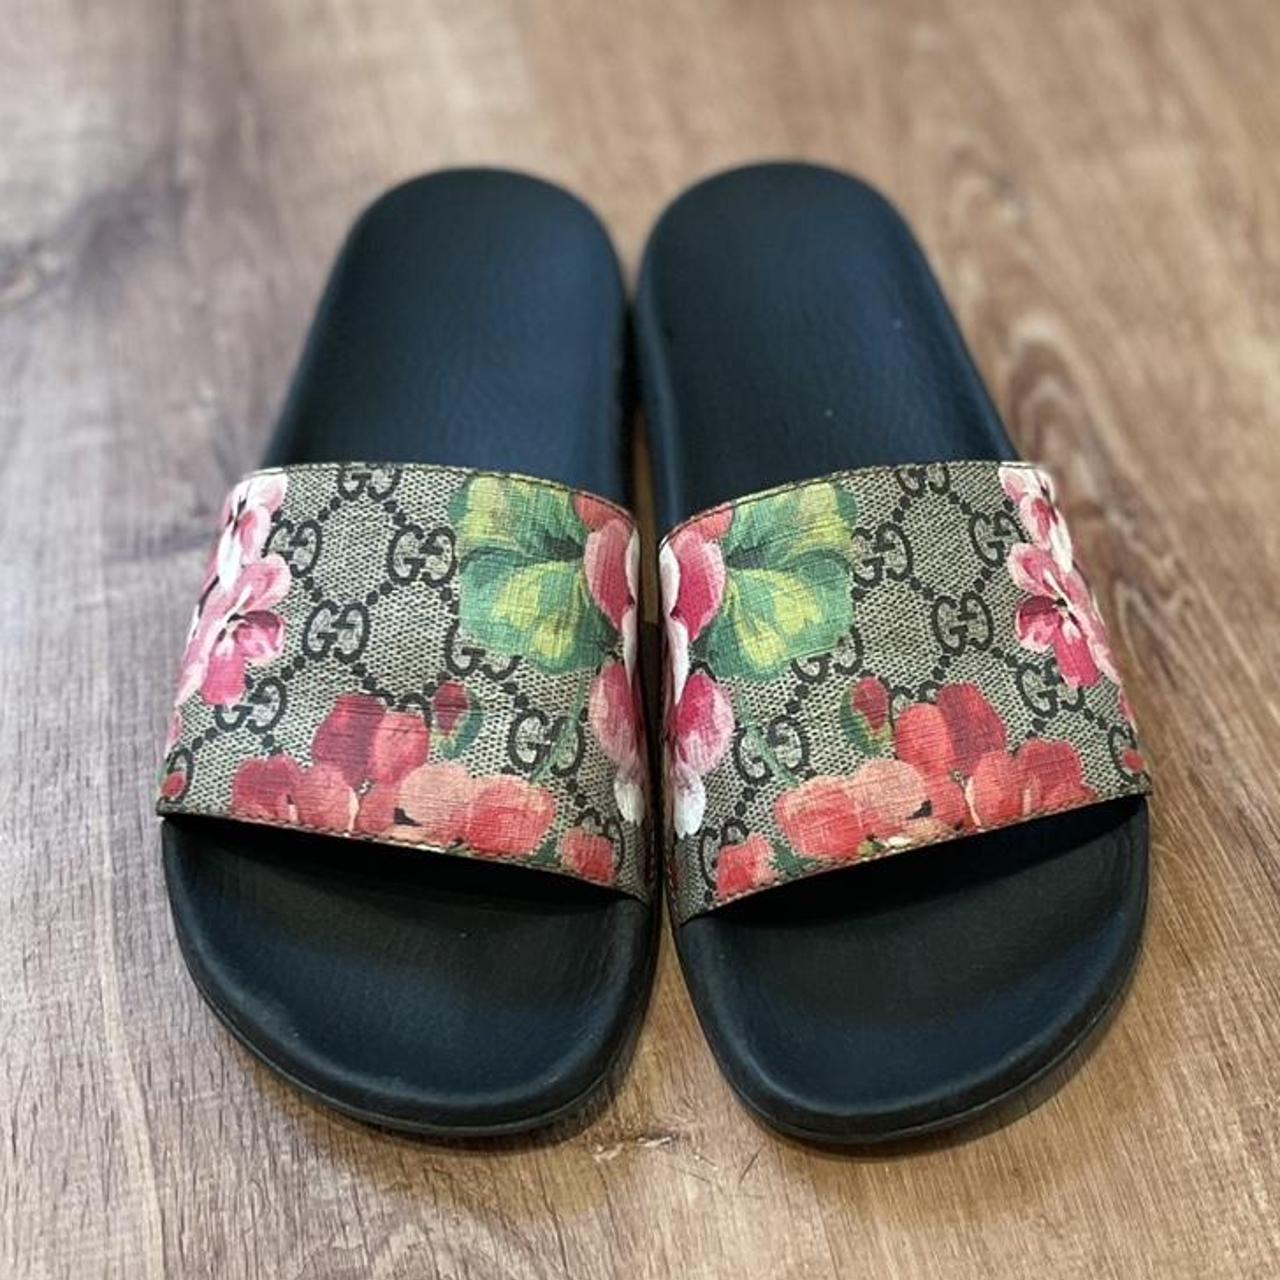 Gucci Floral Slides, slightly worn on the bottoms,... - Depop